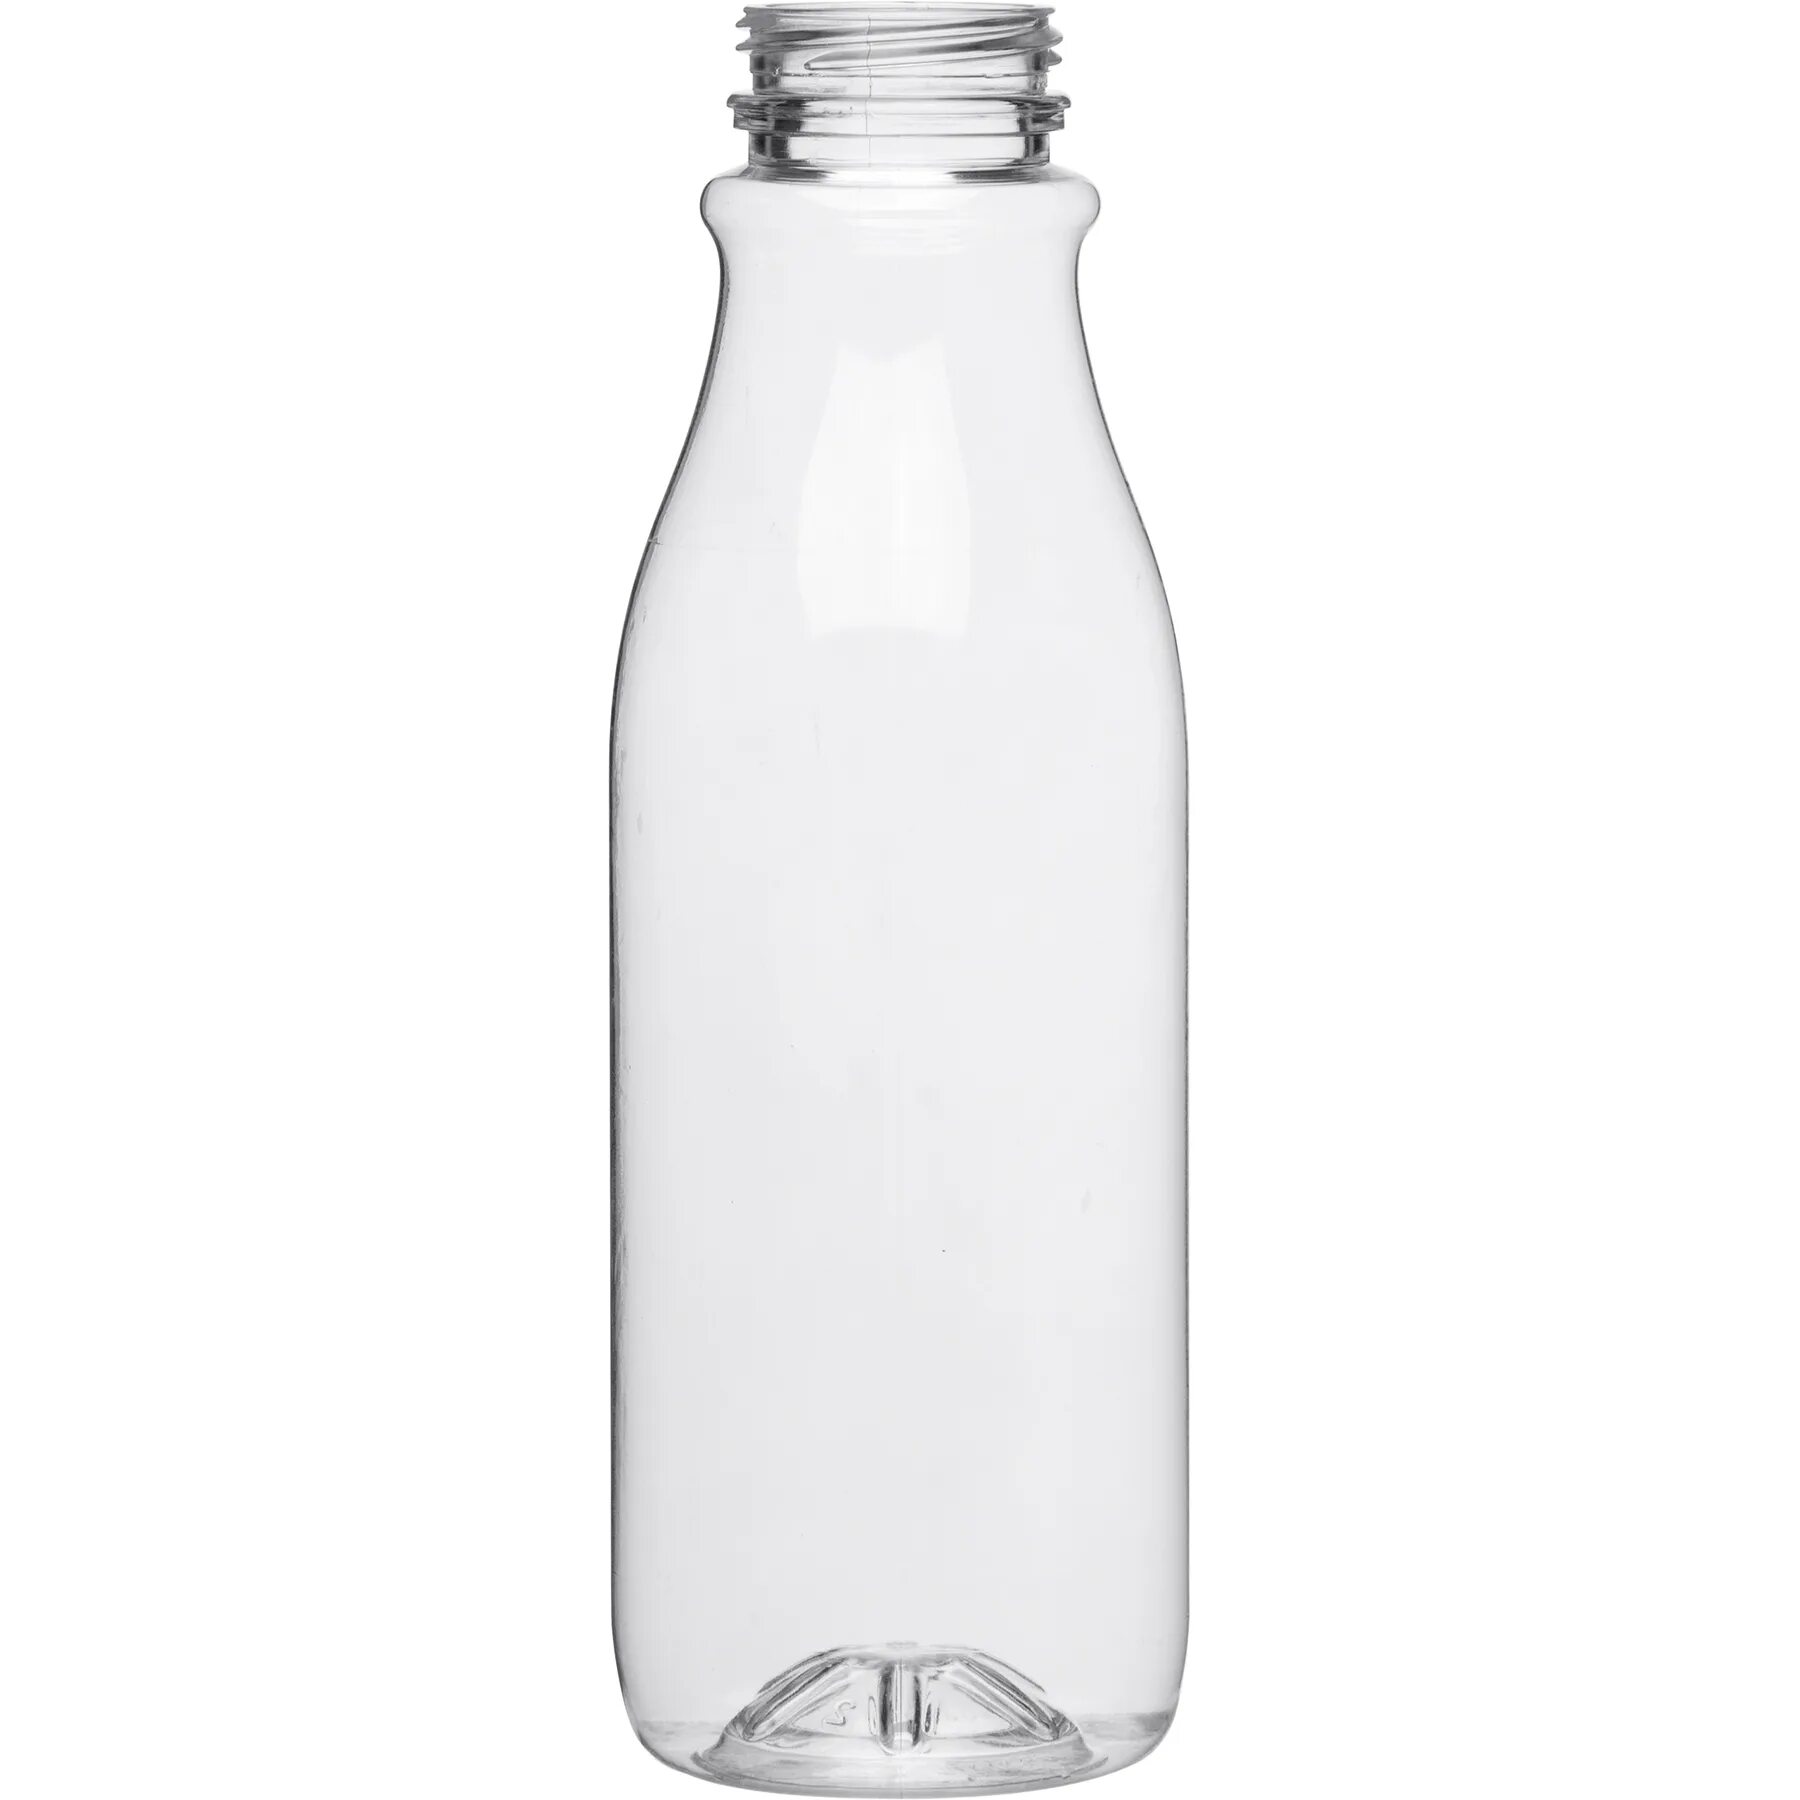 Бутылки 0 5л. ПЭТ бутылка 0,5л стандарт 9/3 бесцветнаяbpf 28мм для дозатора/70. Бутылка ПЭТ 0.5. Бутылка ПЭТ прозрачная квадратная 0,5 л. d=38 мм.(100шт/уп). Бутылка ПЭТ квадратная 0,5 мл d38.